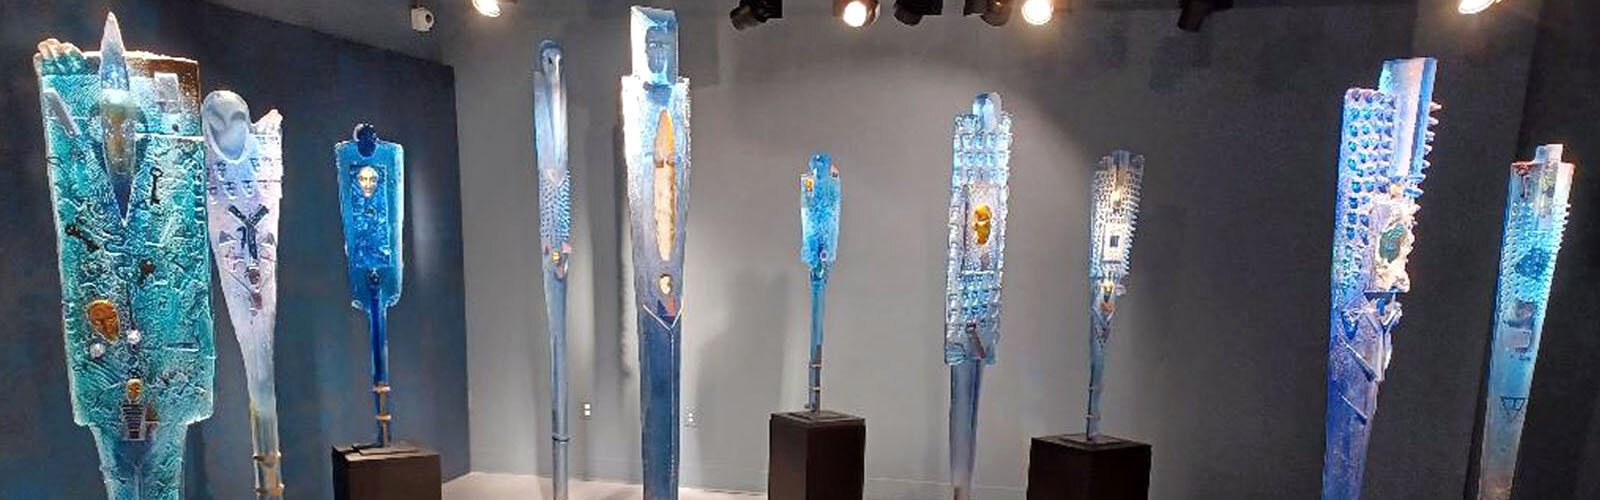 Standing glass sculptures in one of the Imagine Museum’s exhibit halls.